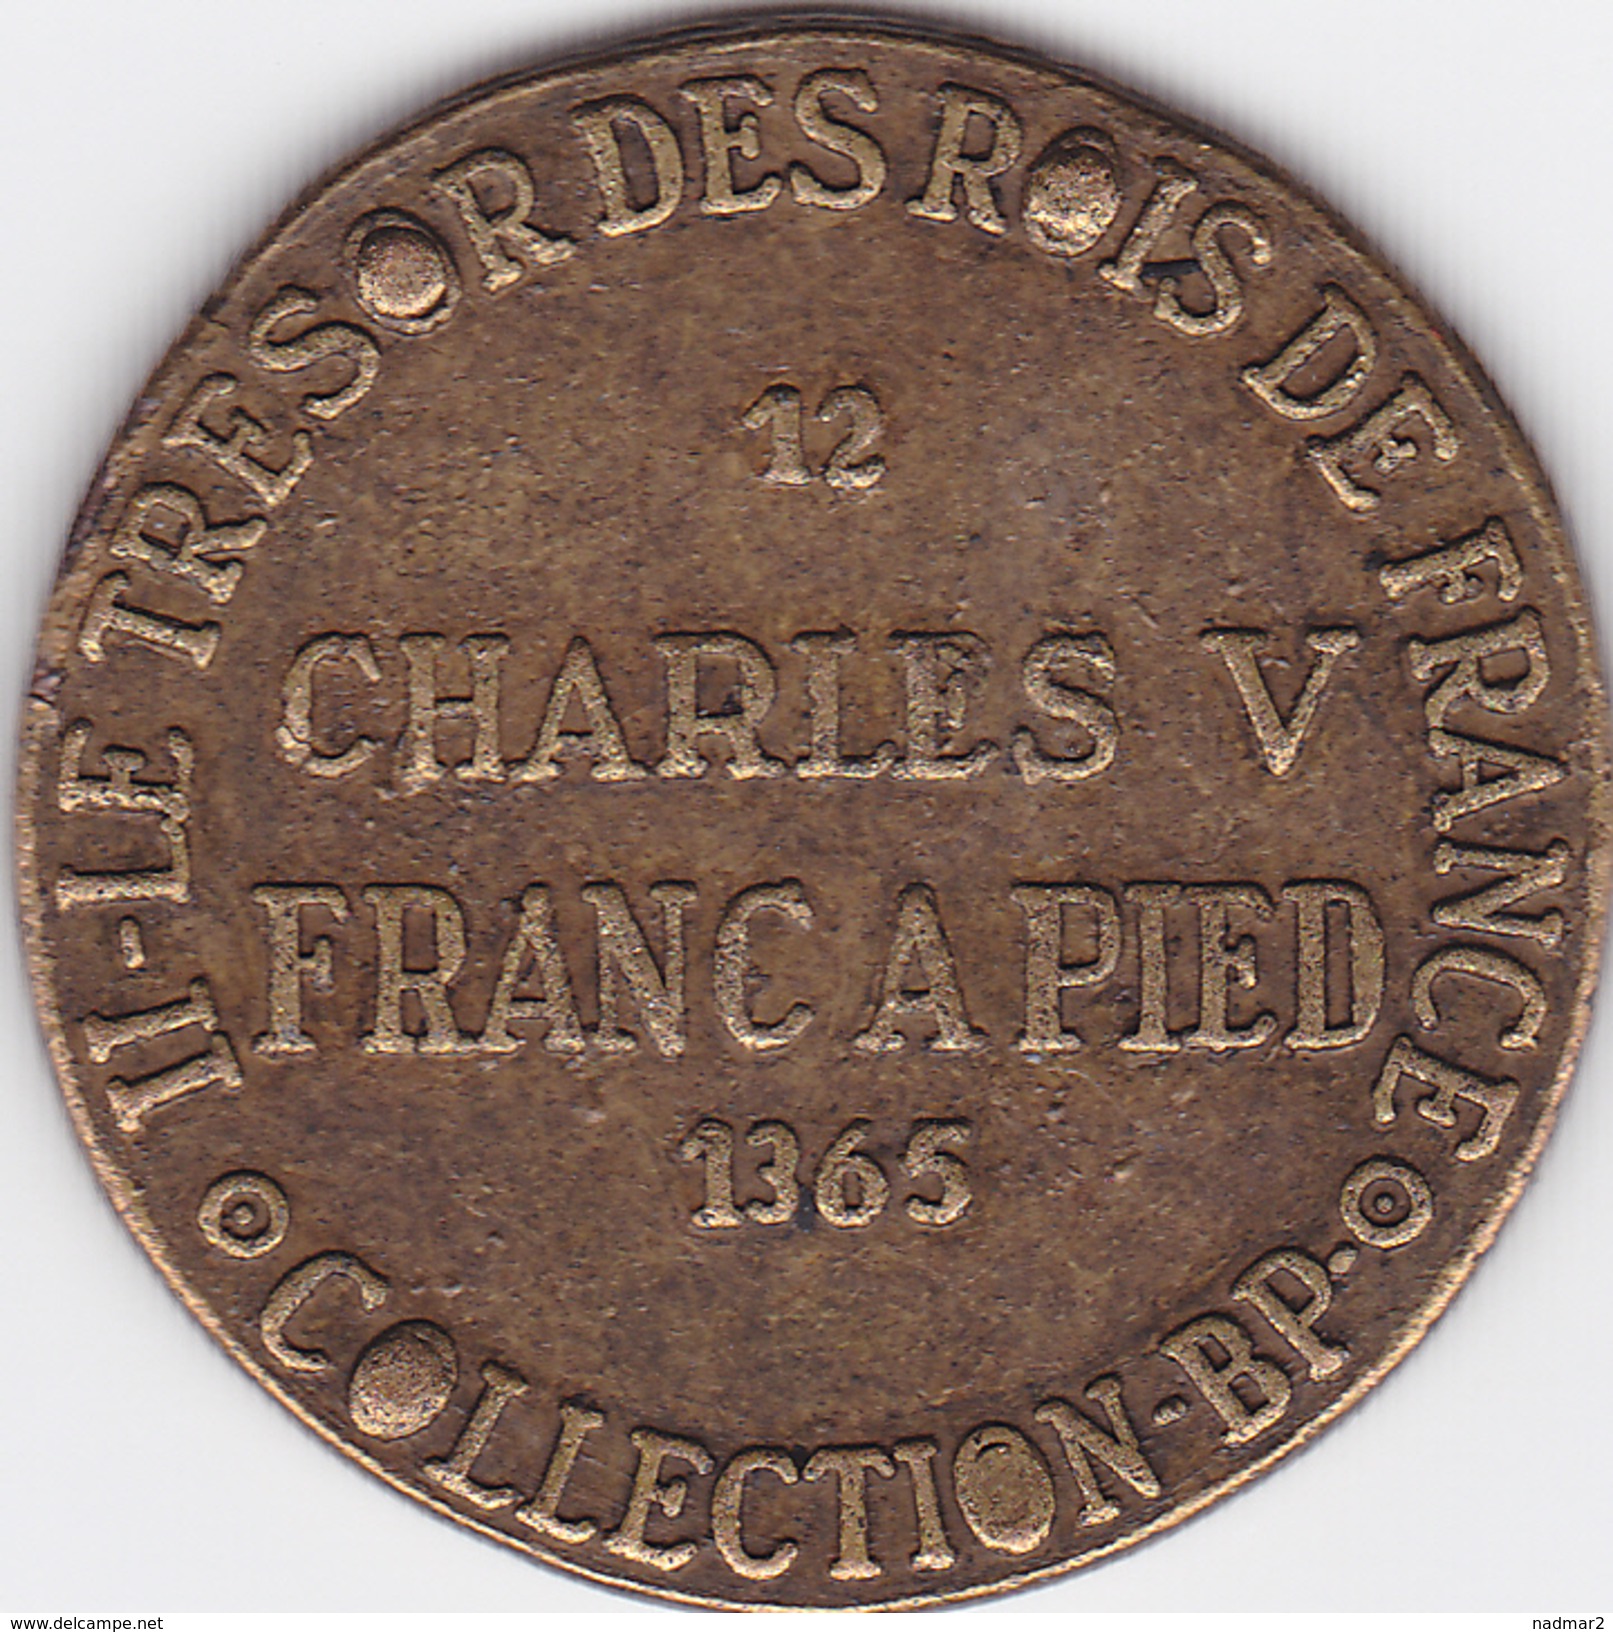 Jeton CHARLES V Franc à Pied 1365 Collection BP Trésor Des Rois De France  5 G TBE Publicité Pièce Monnaie - Royaux / De Noblesse